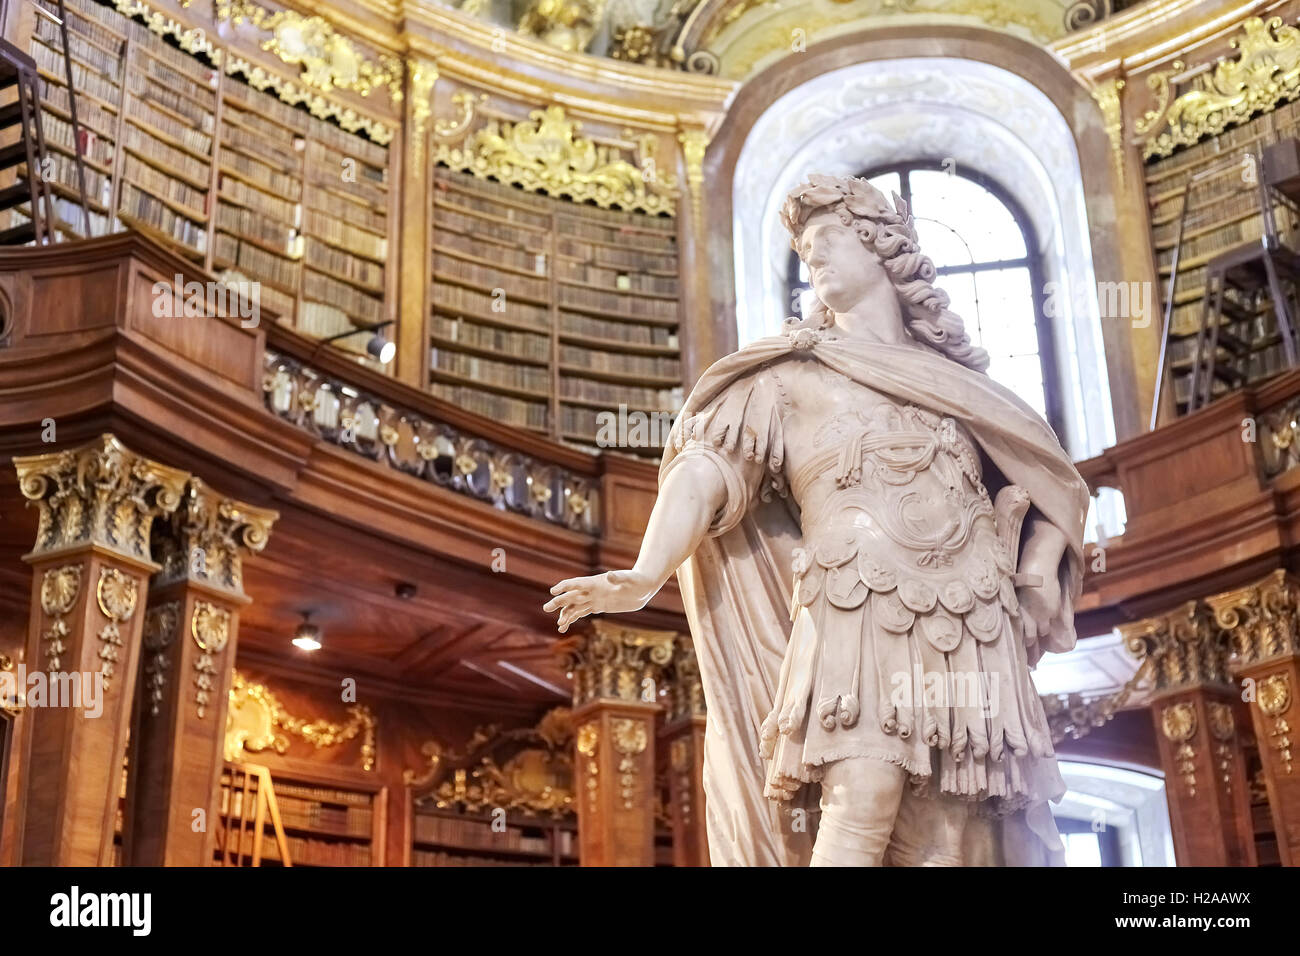 Vienna, Austria - 14 Agosto 2016 : Scultura nello Stato Hall (Prunksaal), il cuore della Biblioteca Nazionale Austriaca. Foto Stock